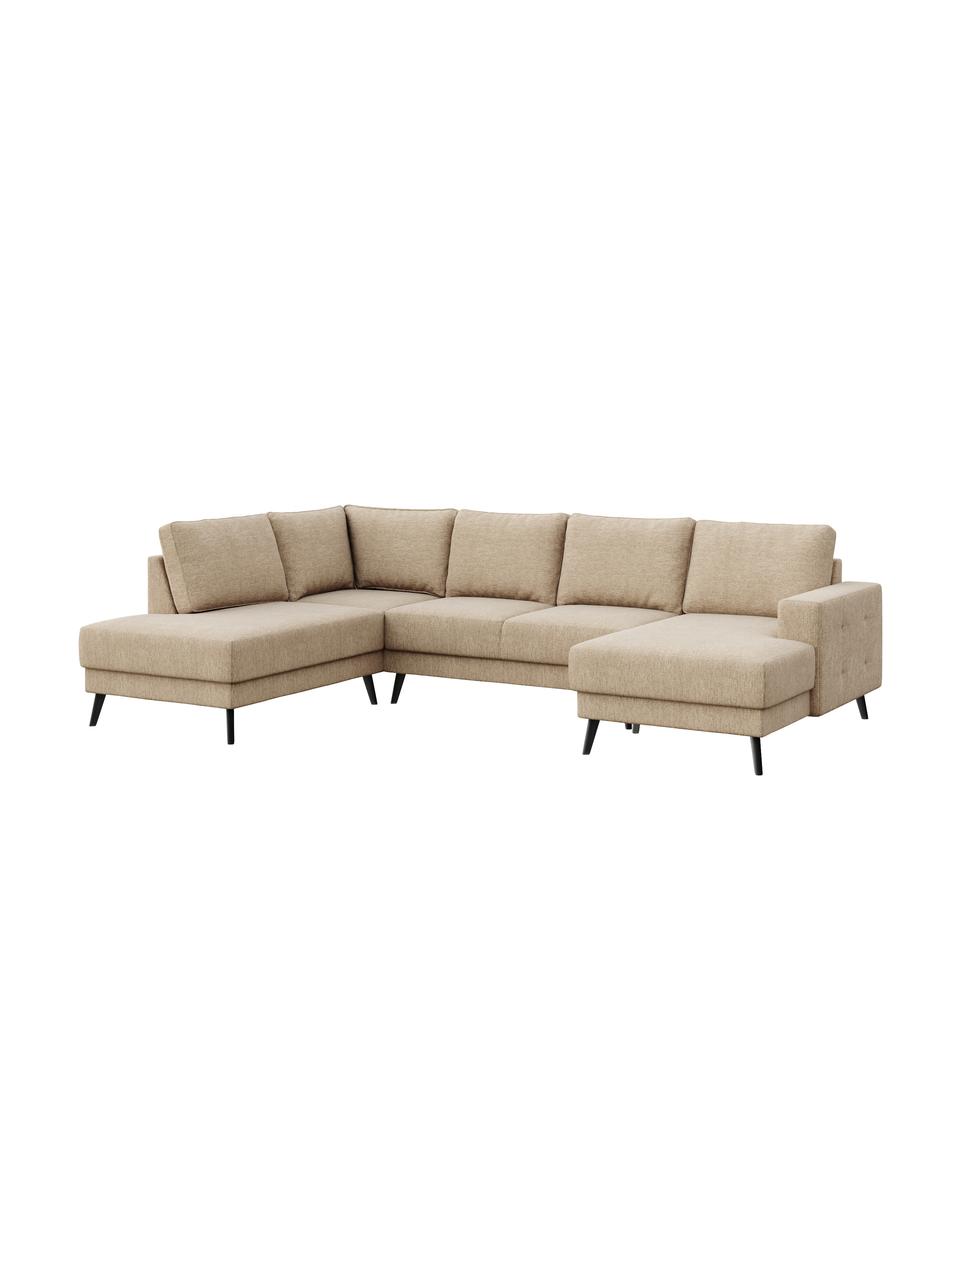 Sofa narożna XL Fynn (5-osobowa), Tapicerka: 100% aksamit poliestrowy , Nogi: drewno lakierowane, Beżowy, S 306 x G 200 cm, lewostronna